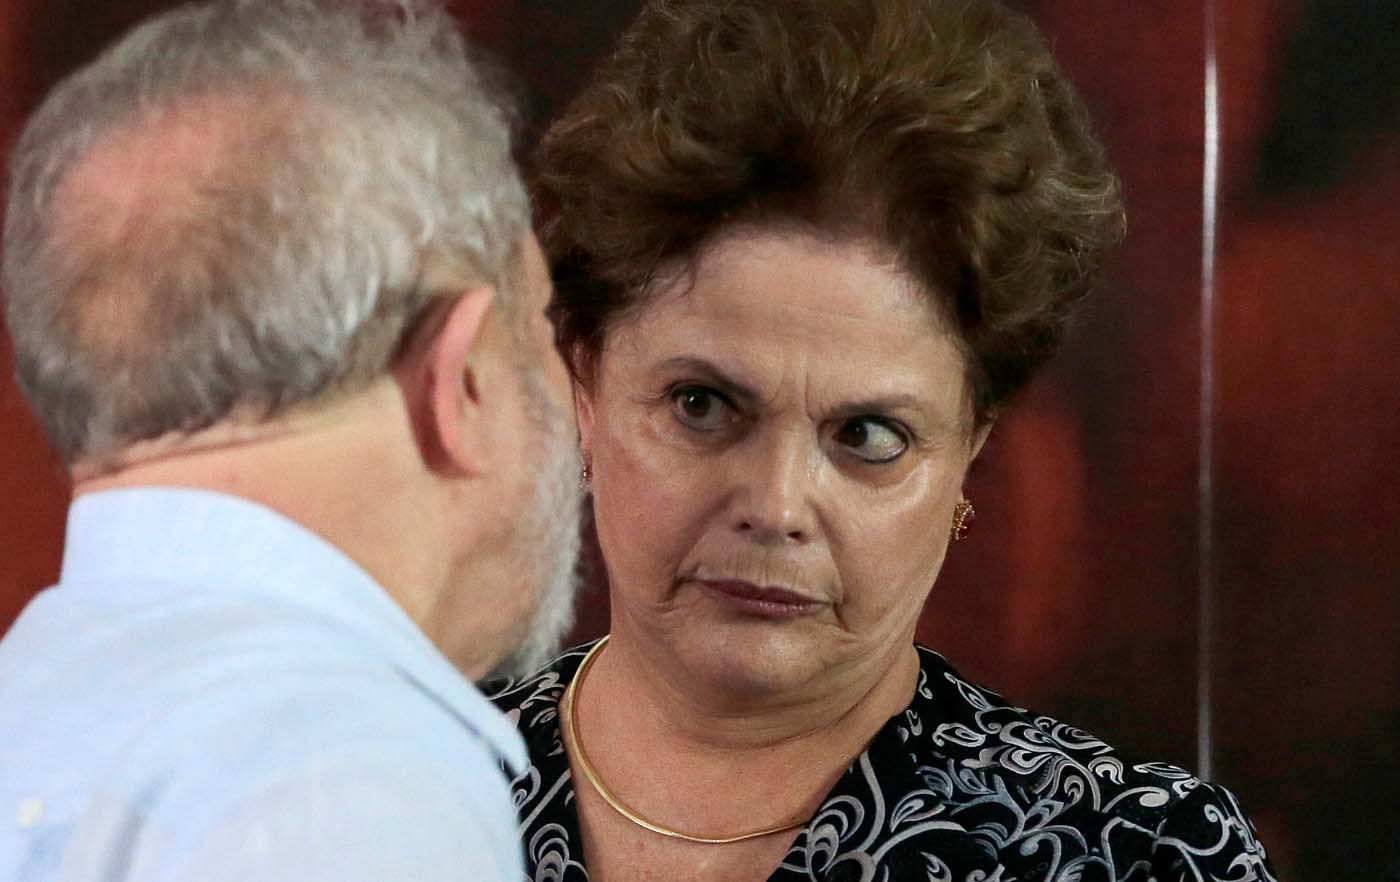 El PT sufriría una dura derrota en los estados más importantes de Brasil, según los primeros boca de urna